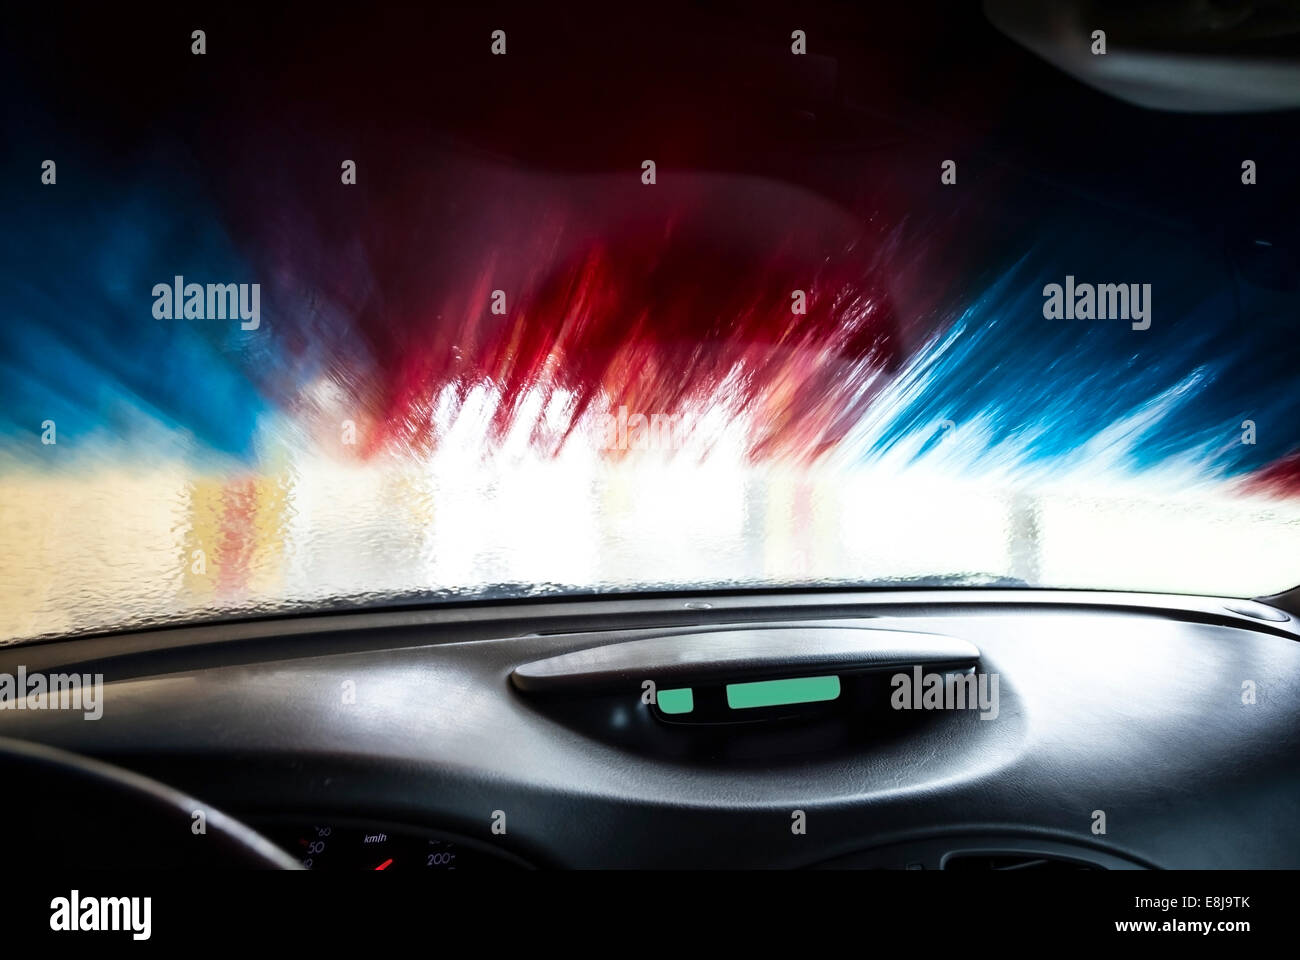 Motion blurred photo de lavage de voiture de l'intérieur d'une voiture pendant le lavage. Banque D'Images